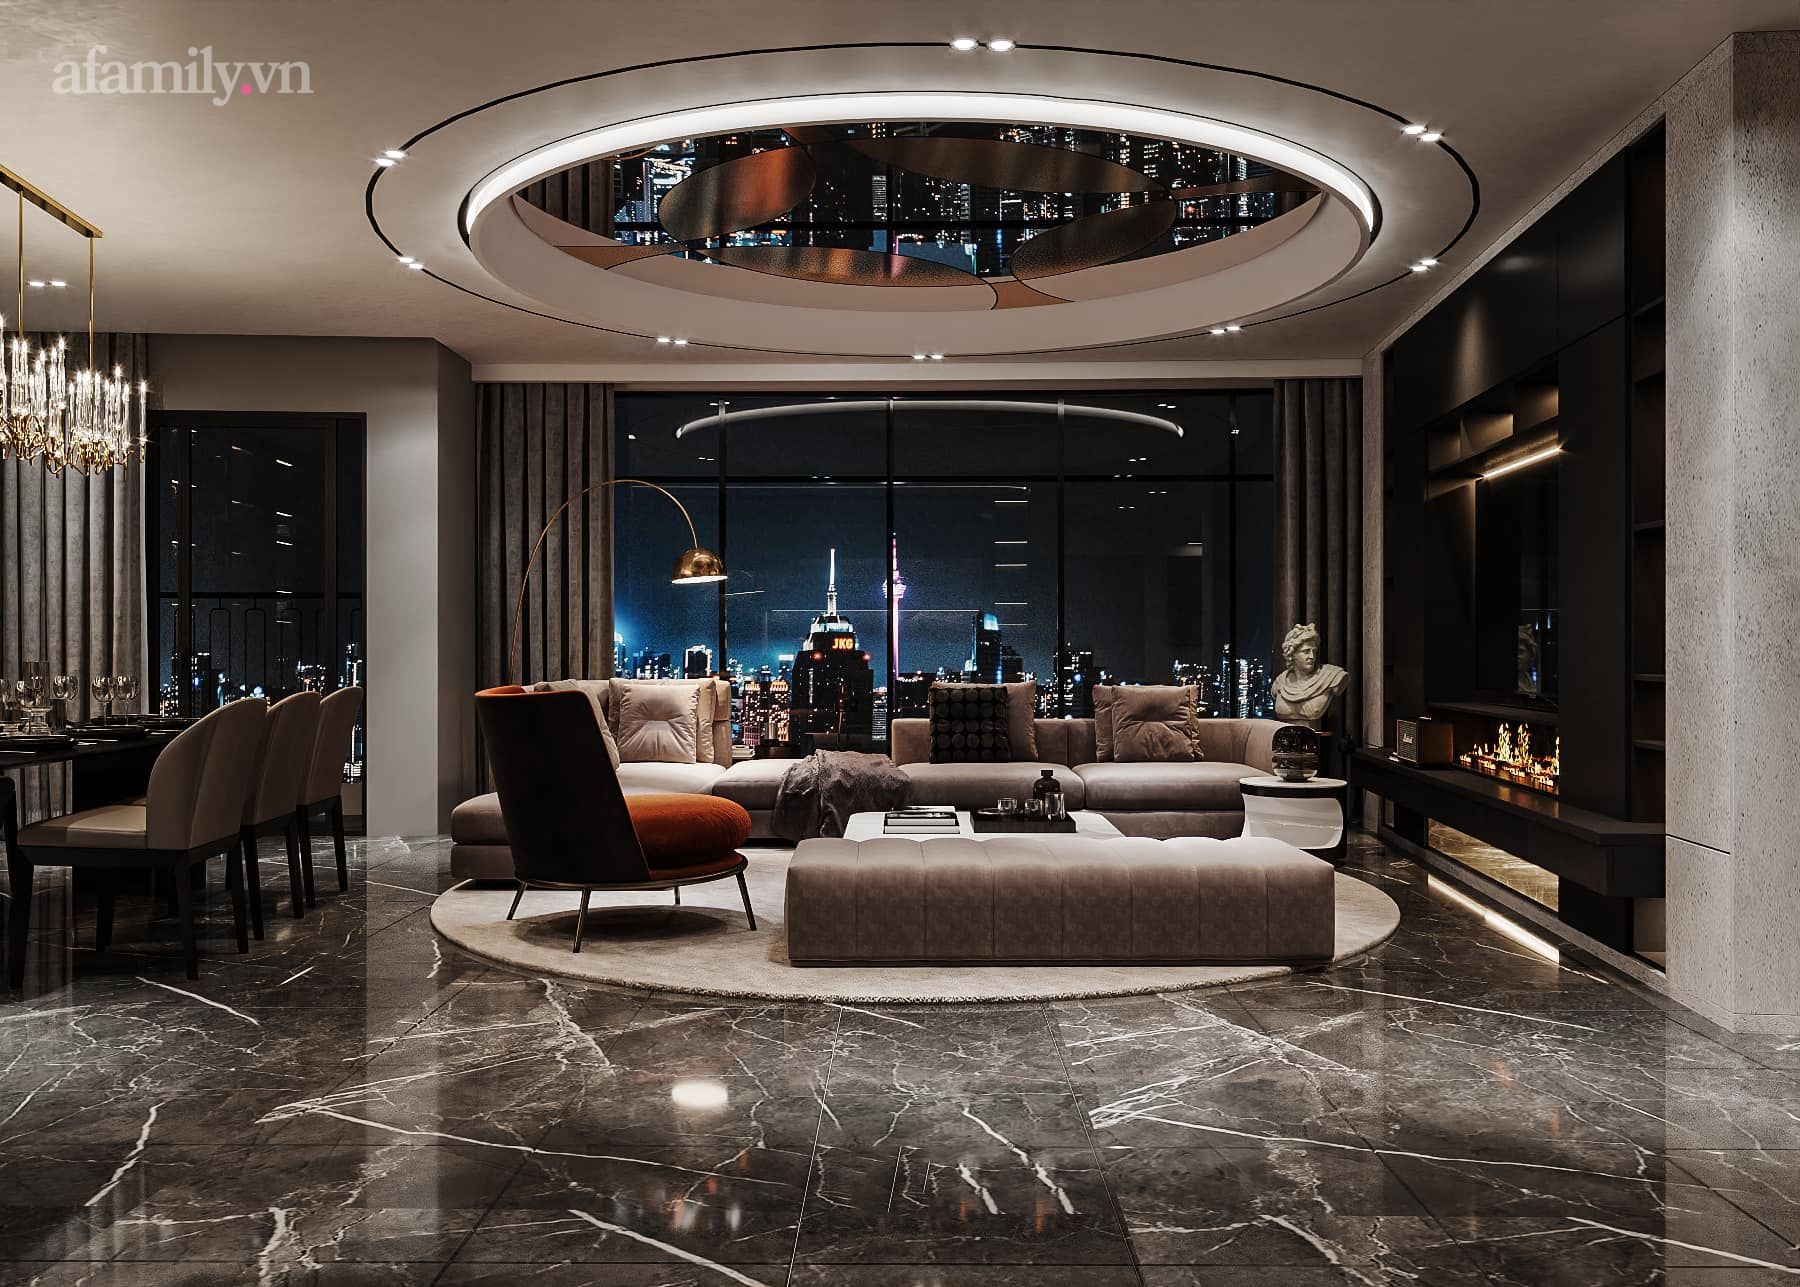 Căn penthouse duplex của nữ CEO Hà Nội bao trọn view sông Hồng, thiết kế luxury hiện đại tone chủ đạo nâu đen cực huyền bí - Ảnh 2.